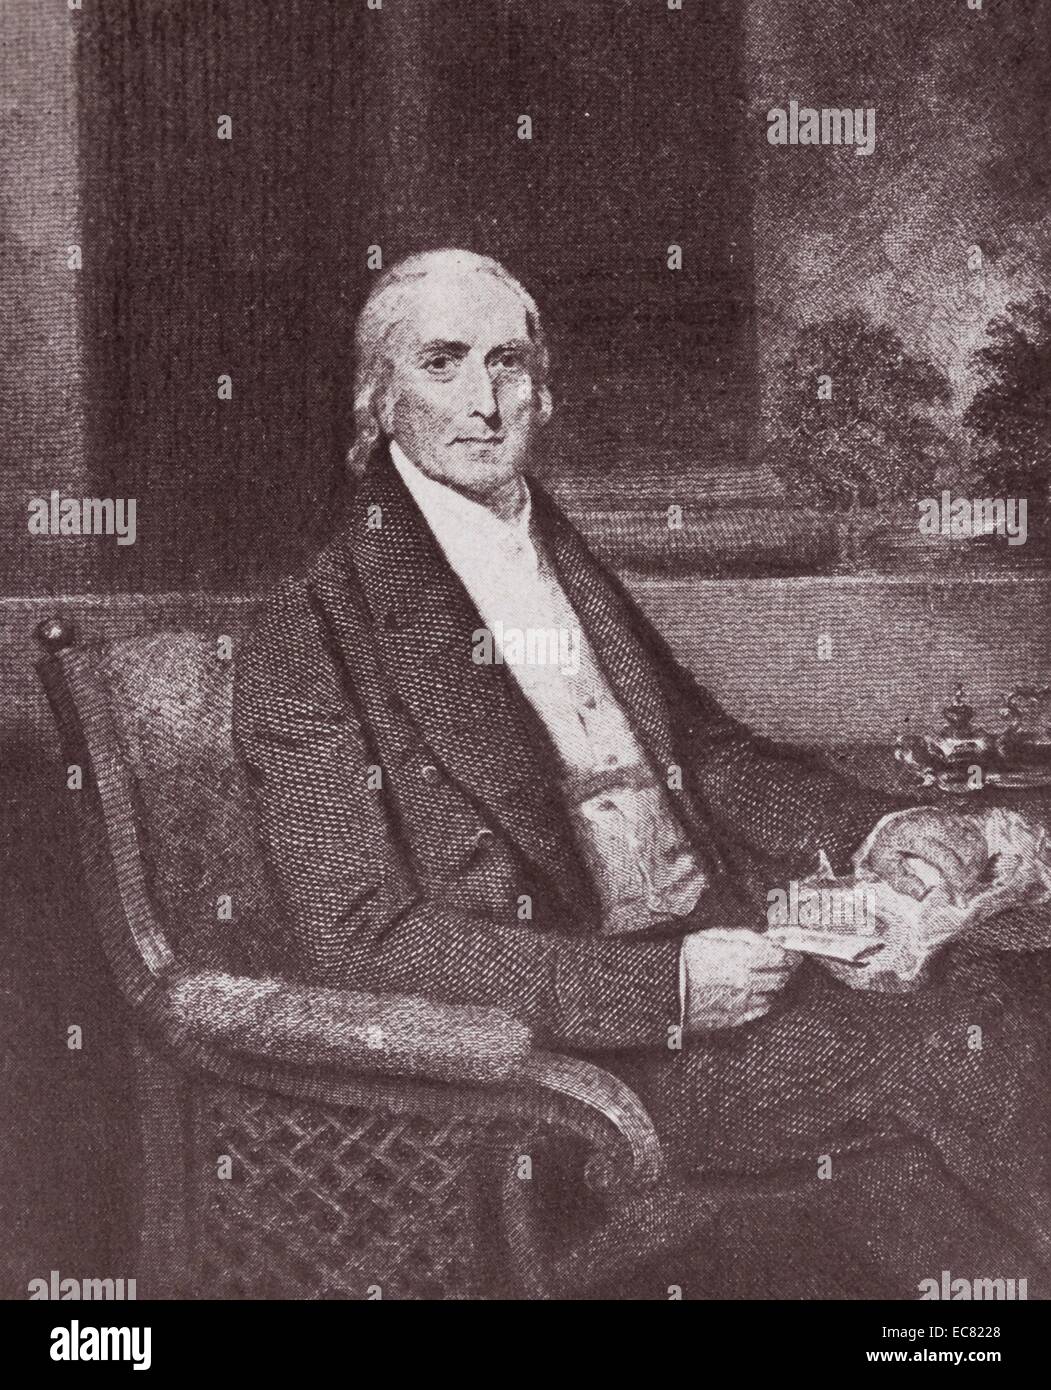 Philip Syng Physick (7 juillet 1768 - 15 décembre 1837) était un médecin américain, connu comme "le père de la chirurgie de l'Amérique". Banque D'Images